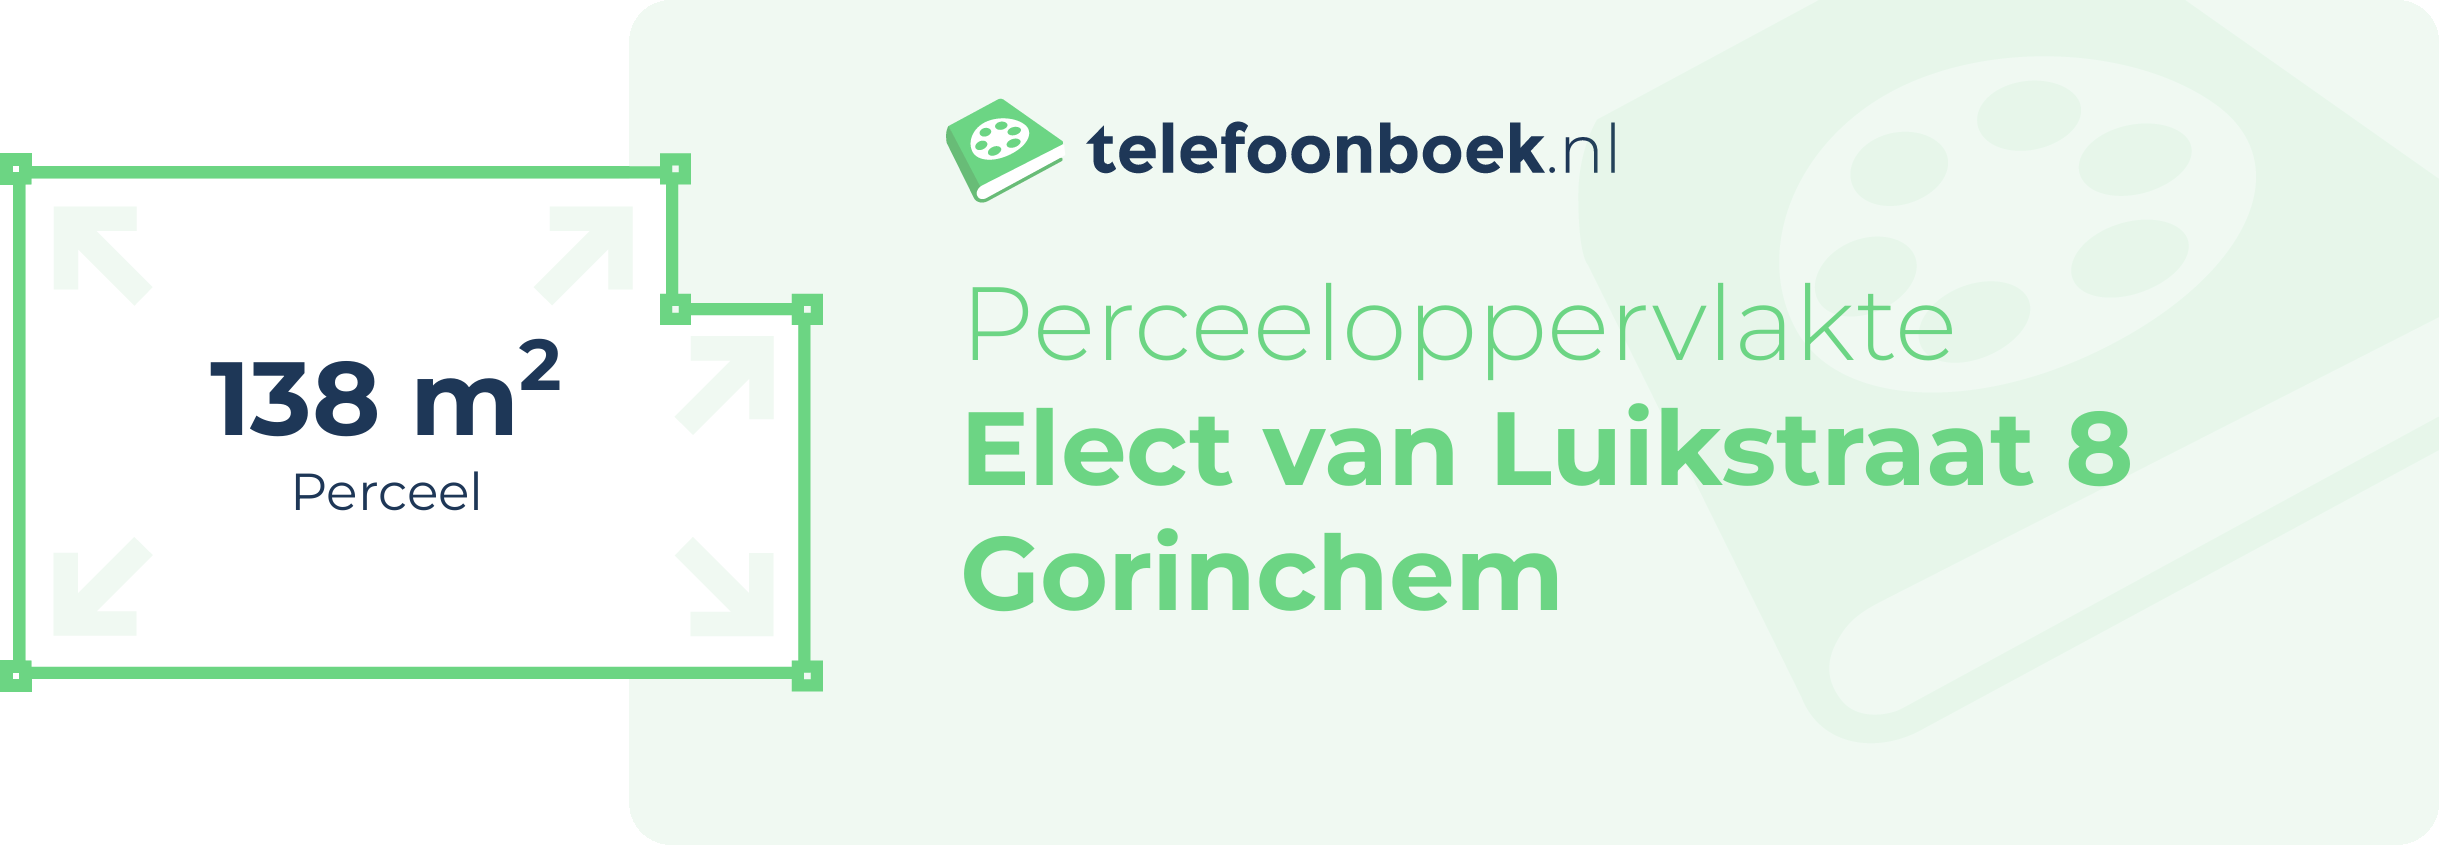 Perceeloppervlakte Elect Van Luikstraat 8 Gorinchem